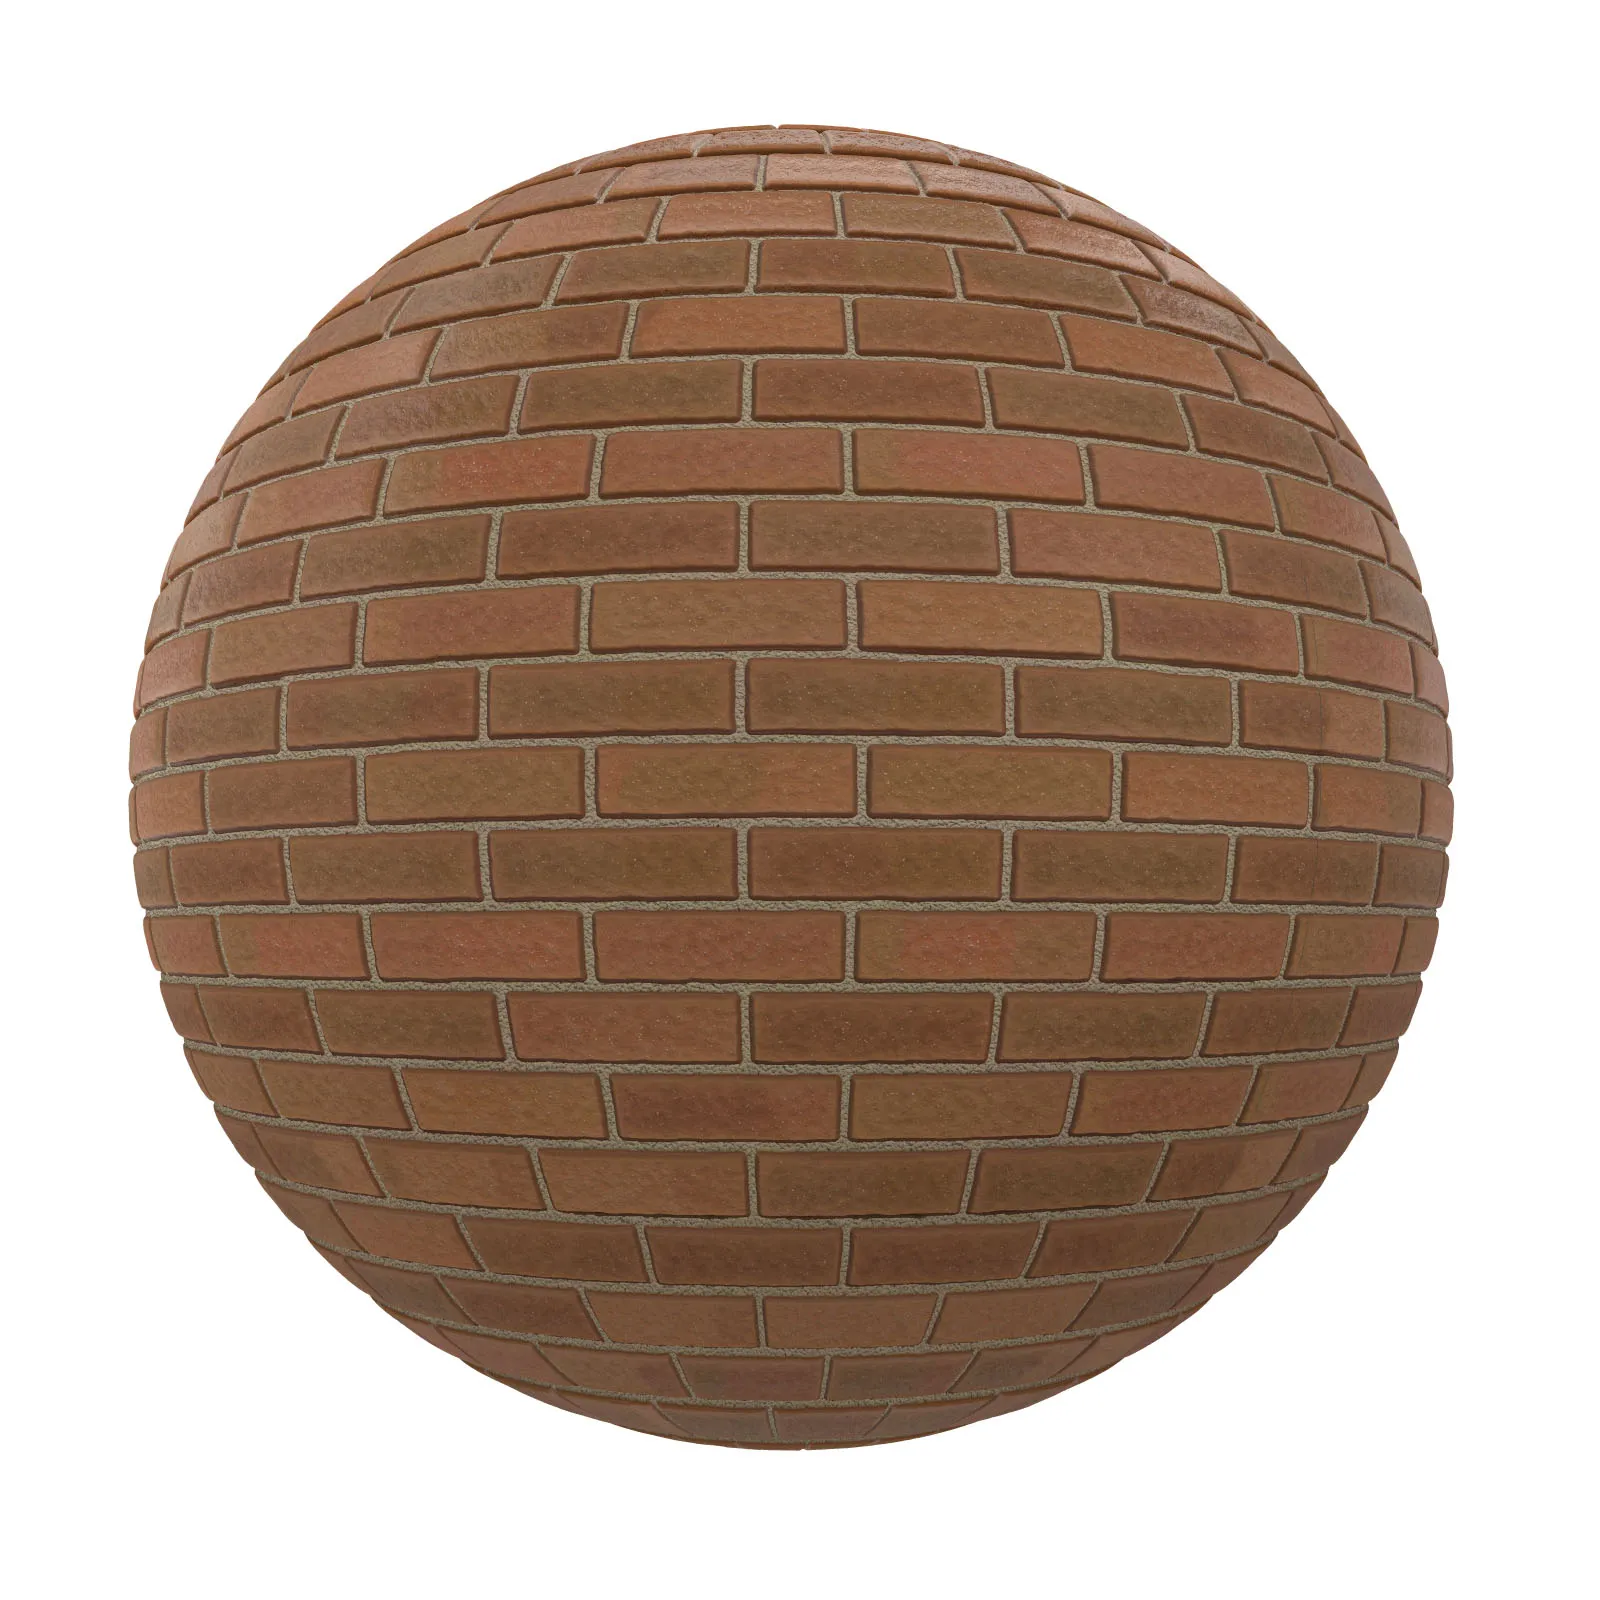 PBR CGAXIS TEXTURES – BRICK – Brown Brick Wall 12